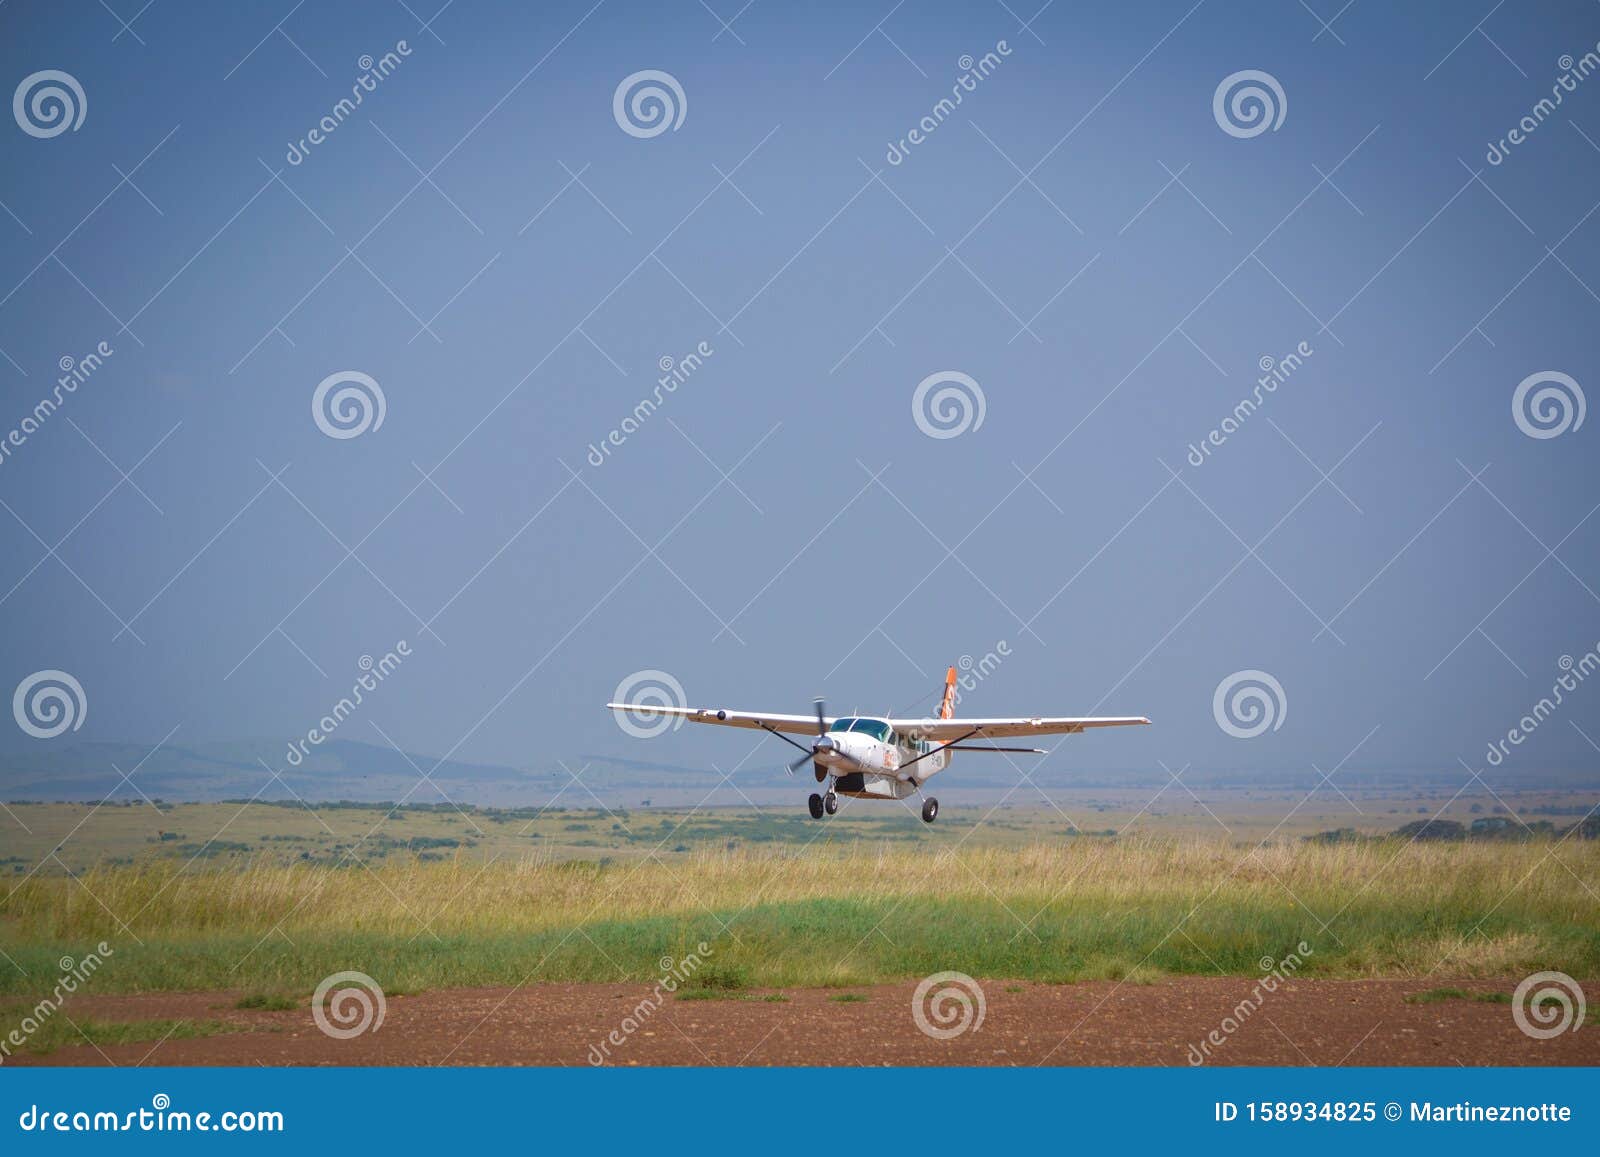 airplane arrive to masai mara reserve